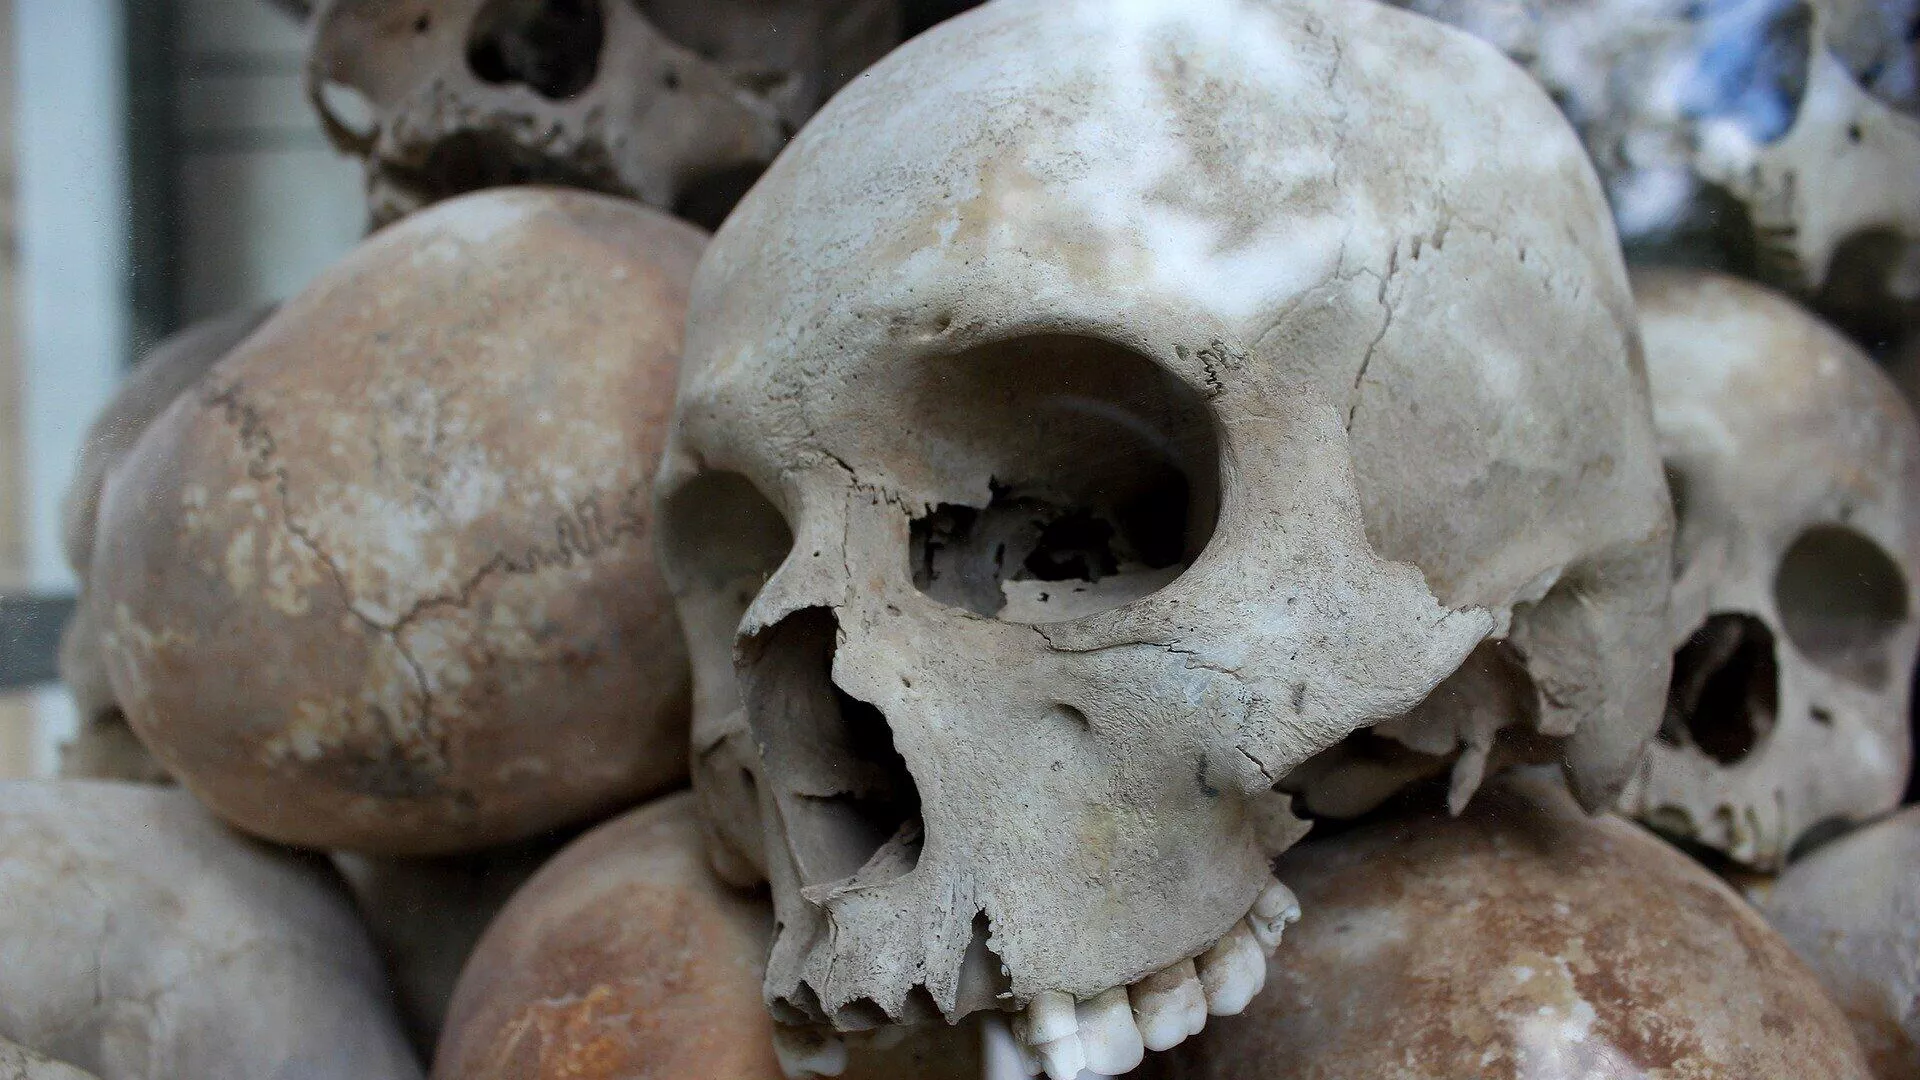  La cultura precolombina no deja de sorprender: hallan en Perú tumbas con niños sacrificados